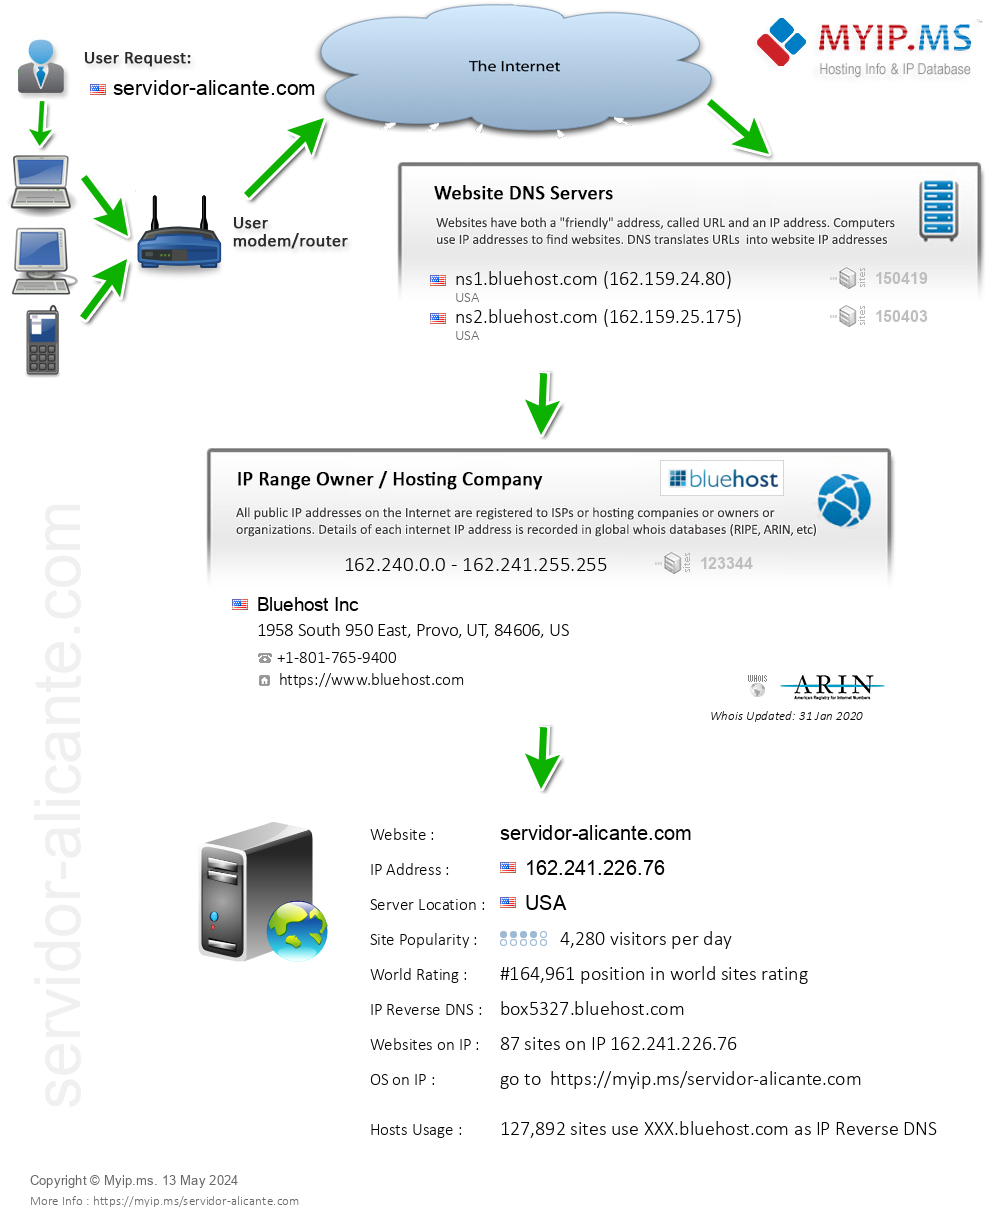 Servidor-alicante.com - Website Hosting Visual IP Diagram